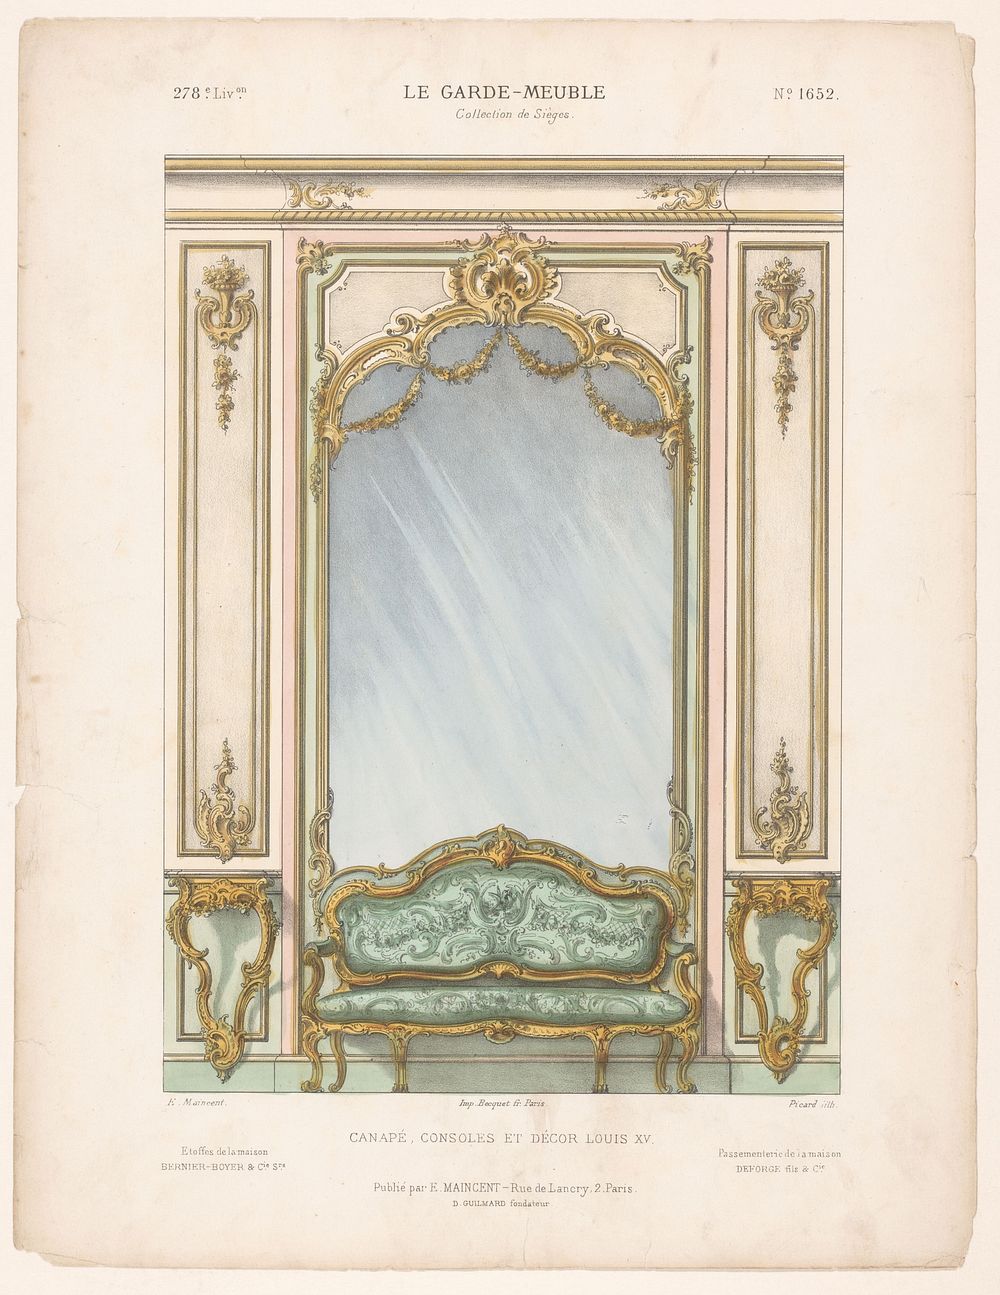 Canapé voor spiegel (1885 - 1895) by Picard, Becquet frères, Eugène Maincent and Désiré Guilmard